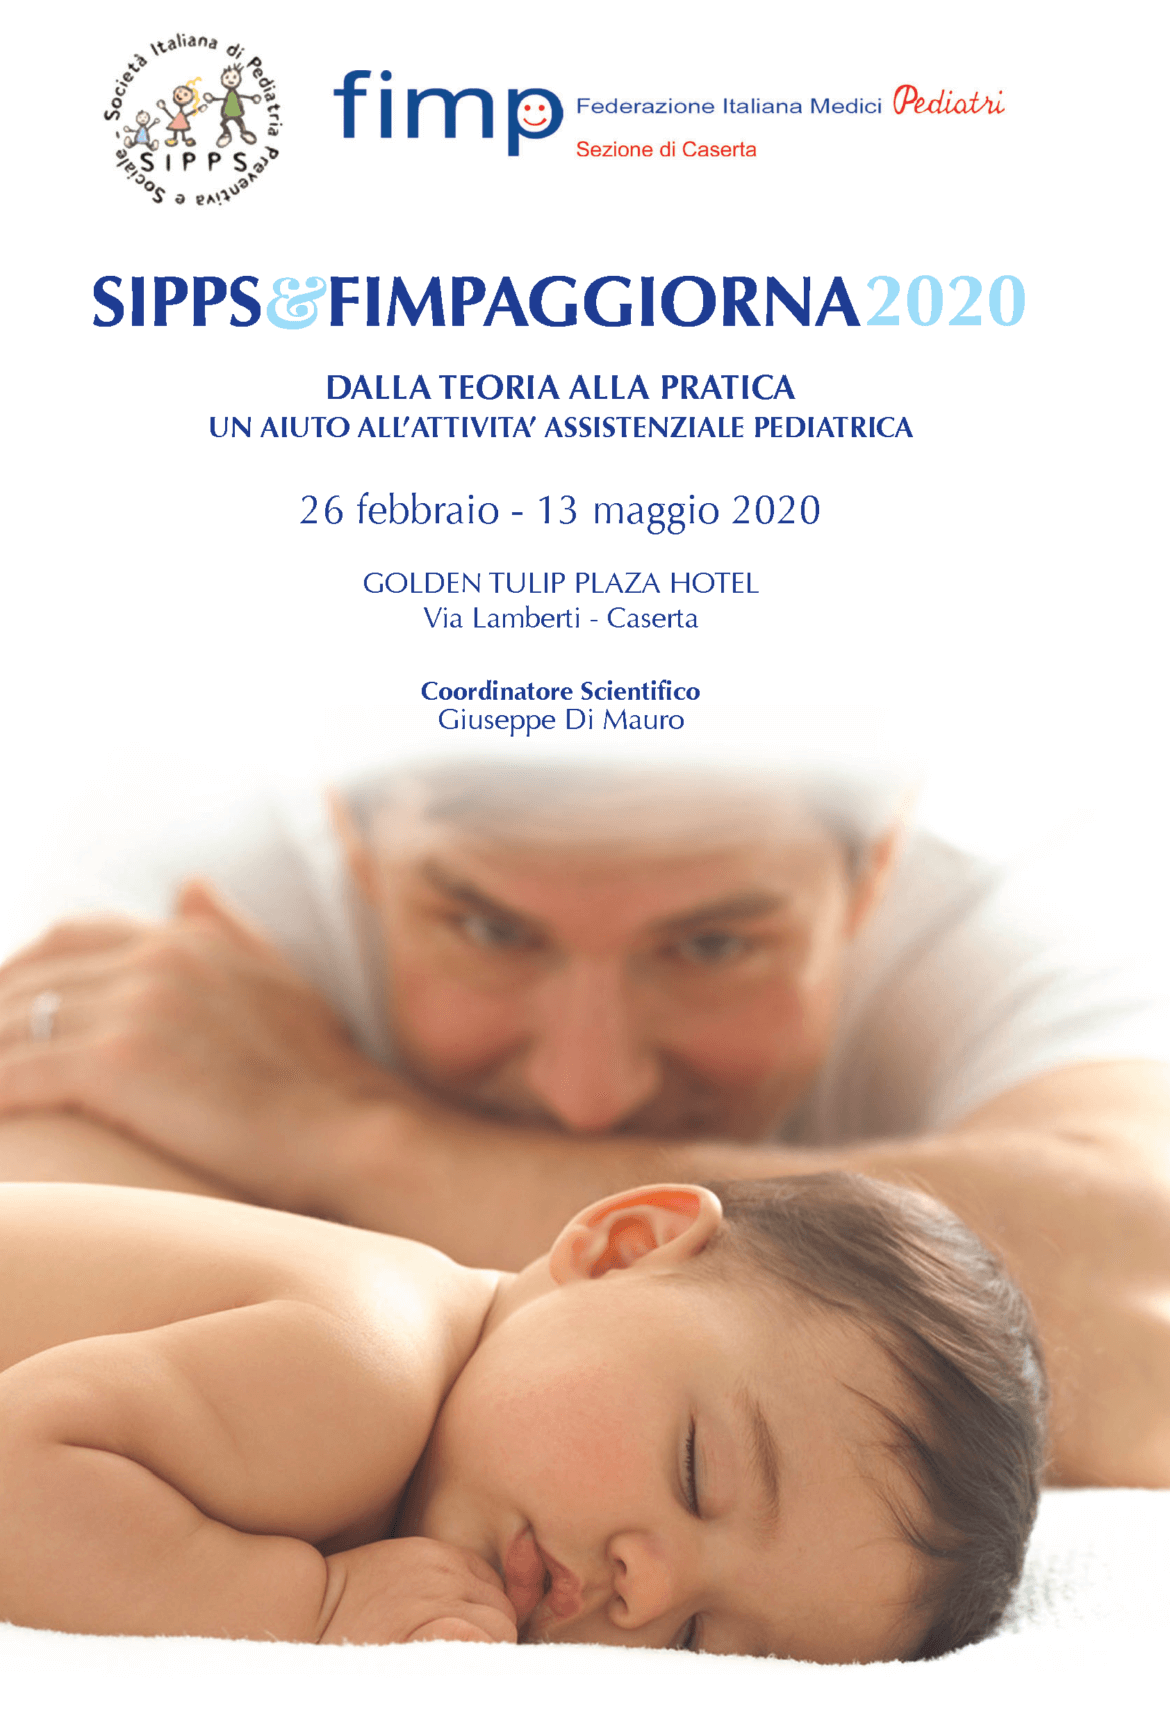 Programma-SIPPS-Fimpaggiona-2020_Pagina_1.png